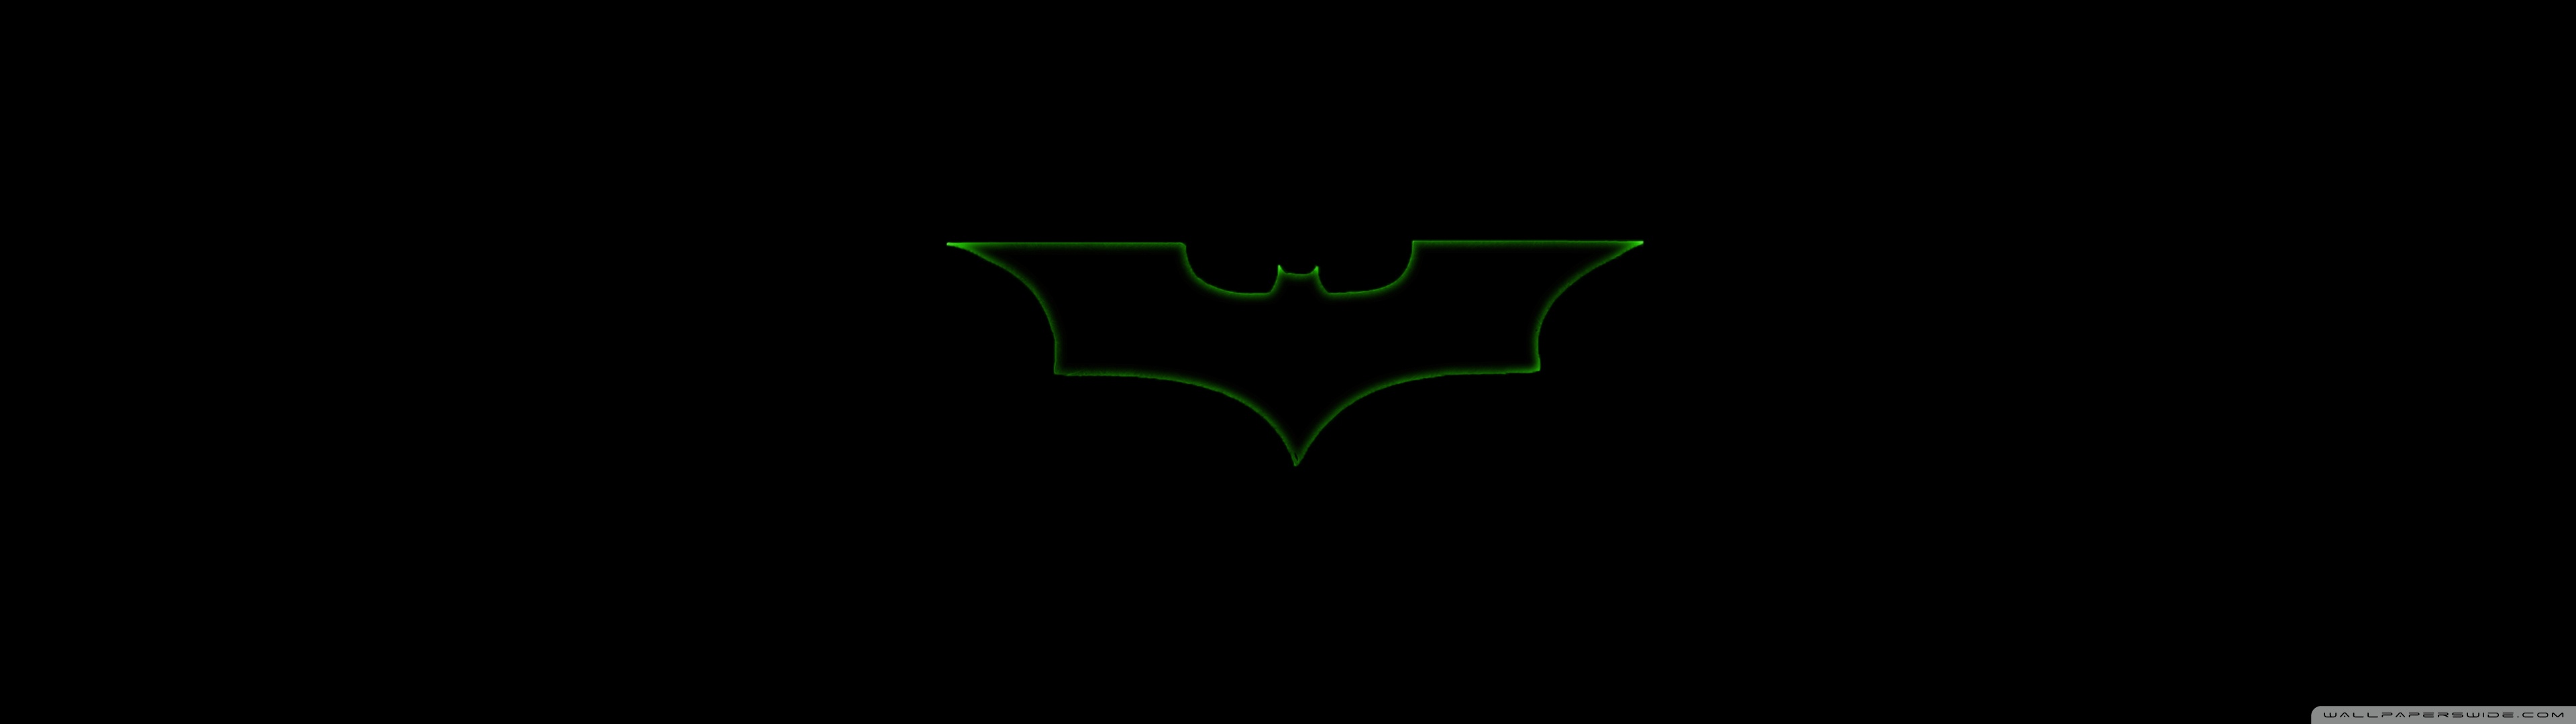 Скачать обои Бэтмен: Под Колпаком на телефон бесплатно